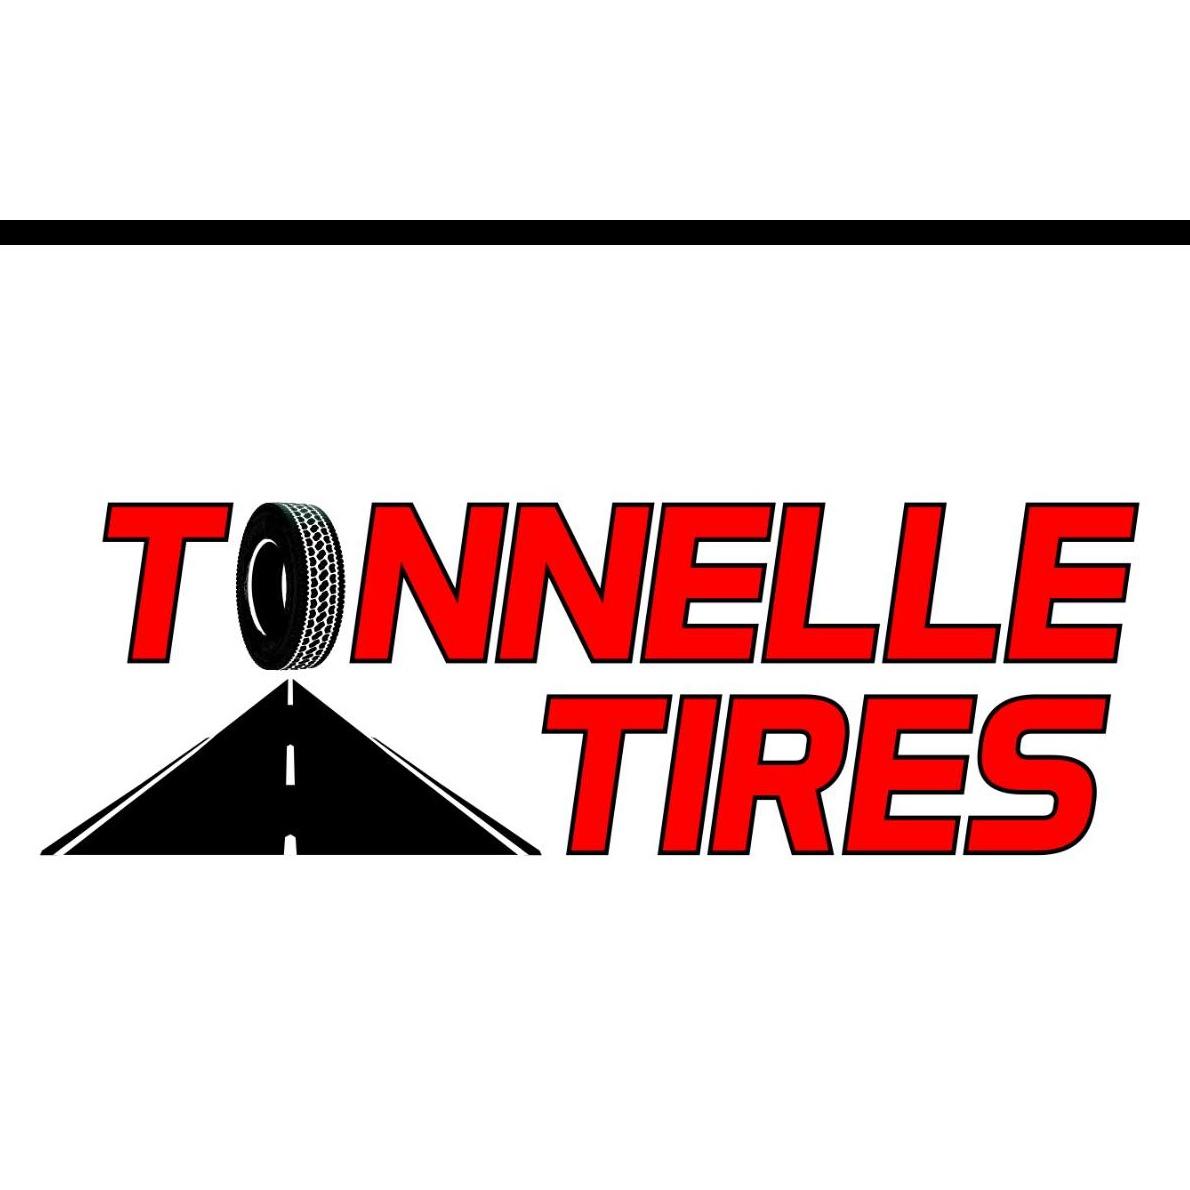 TONNELLE TIRE SERVICE Logo